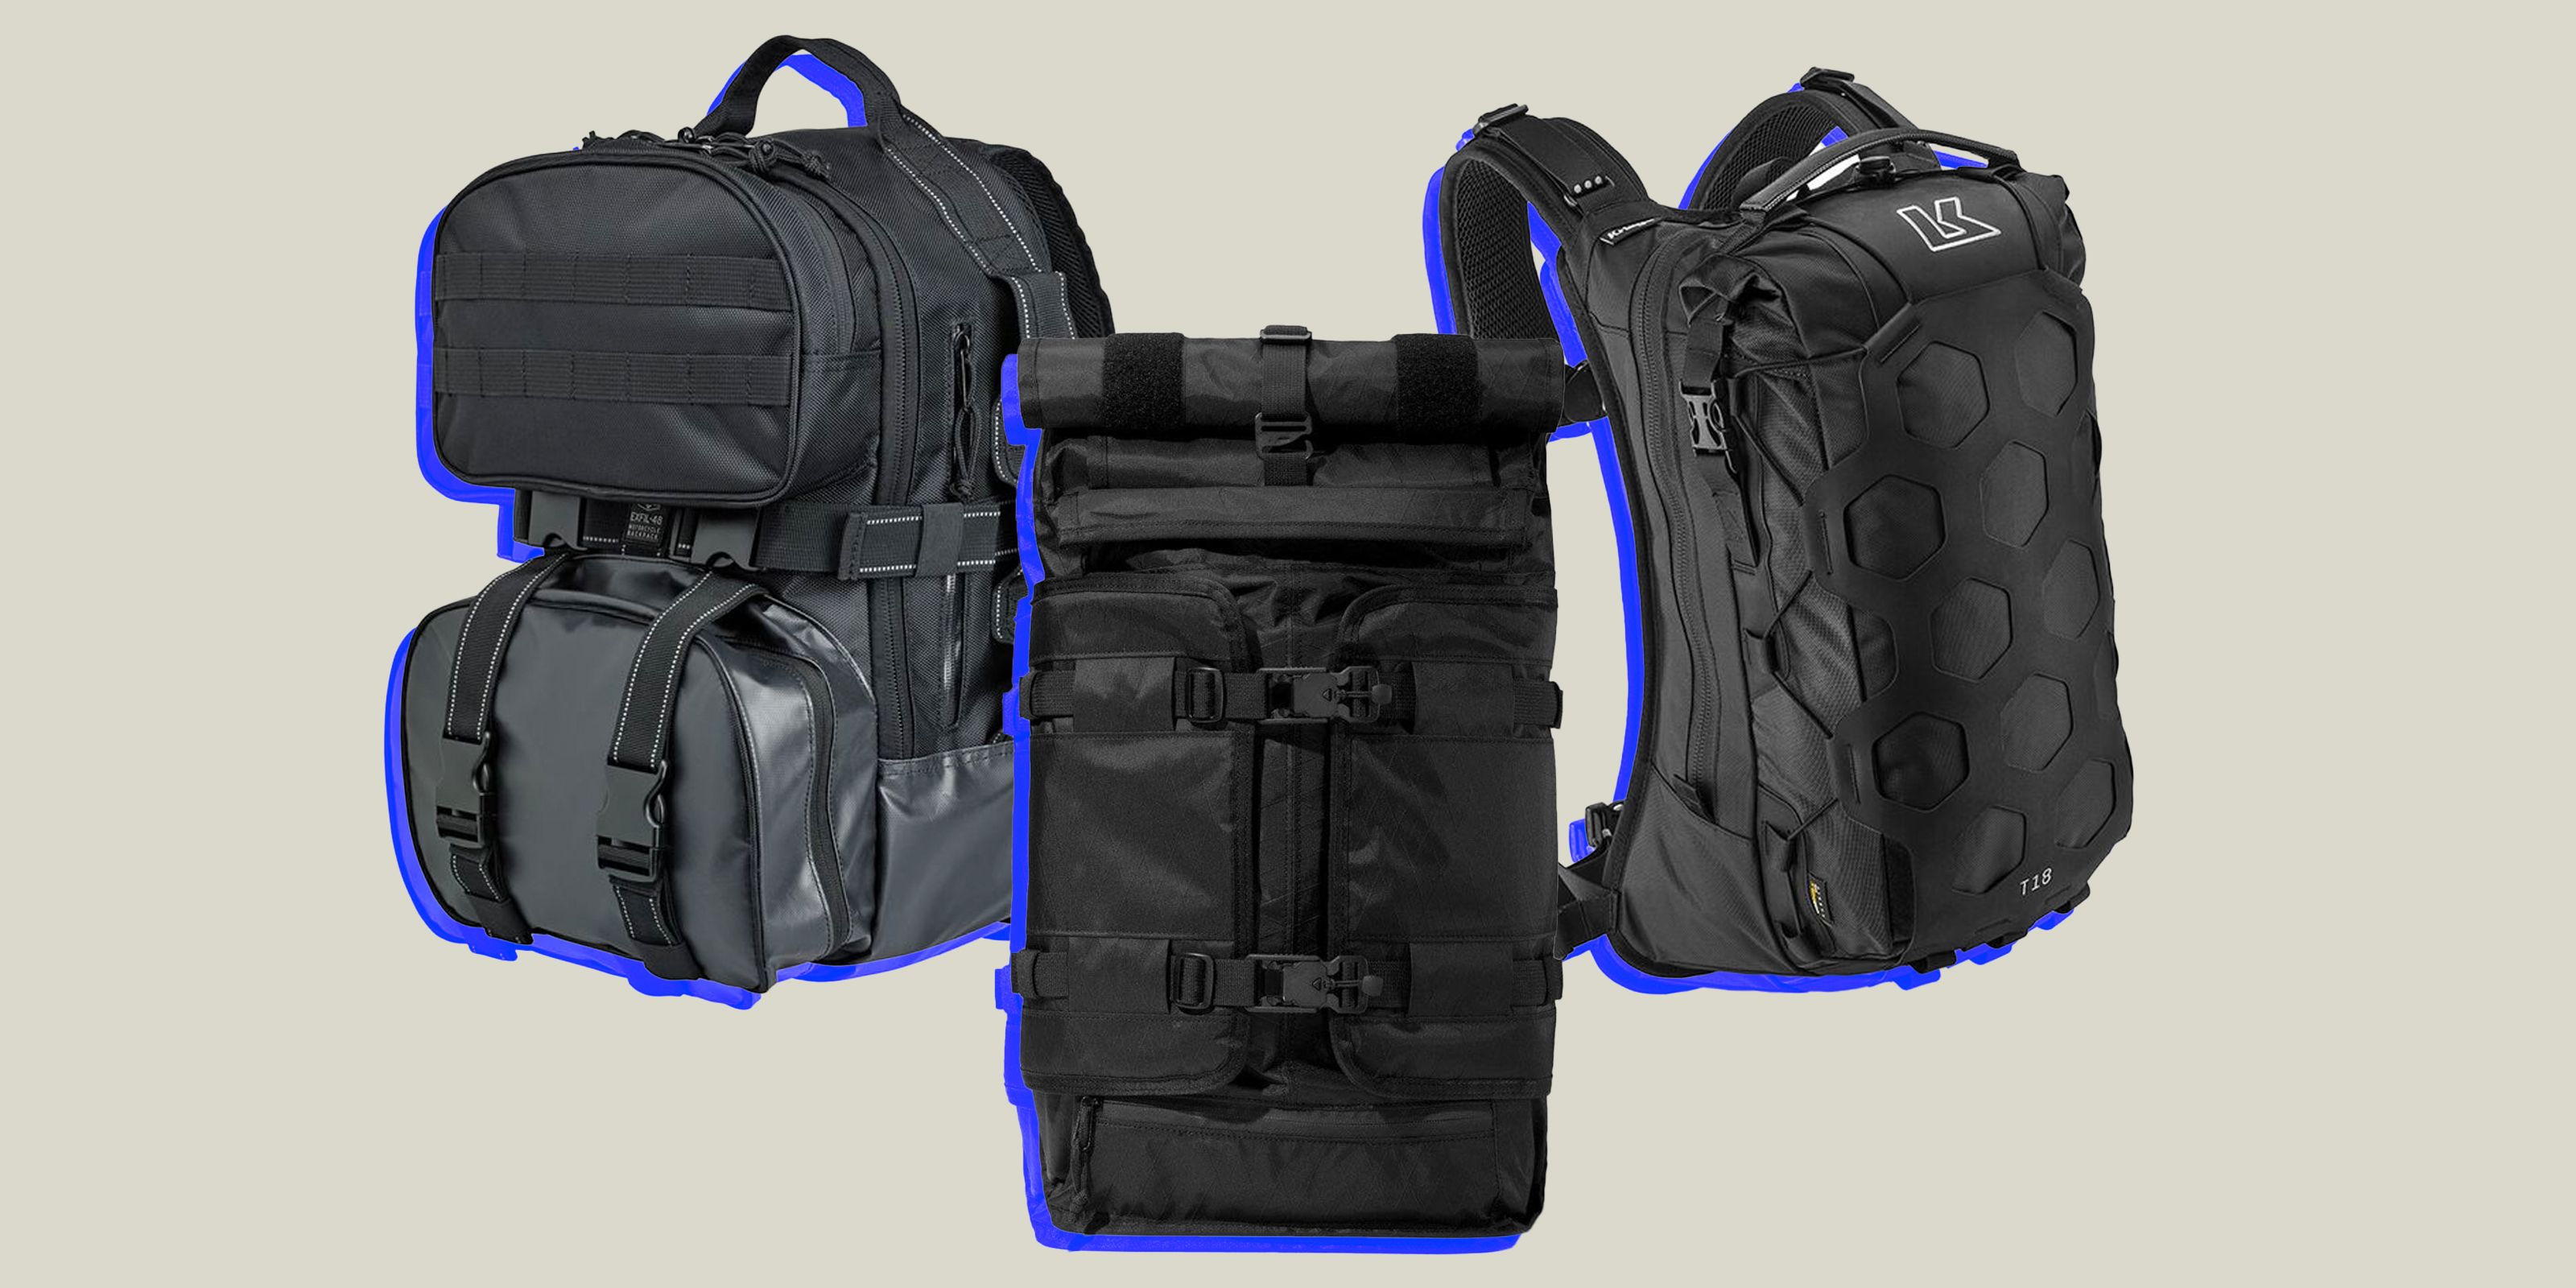 HandsOn Ethnotek Raja 30 Liter Backpack Review  GearMoose